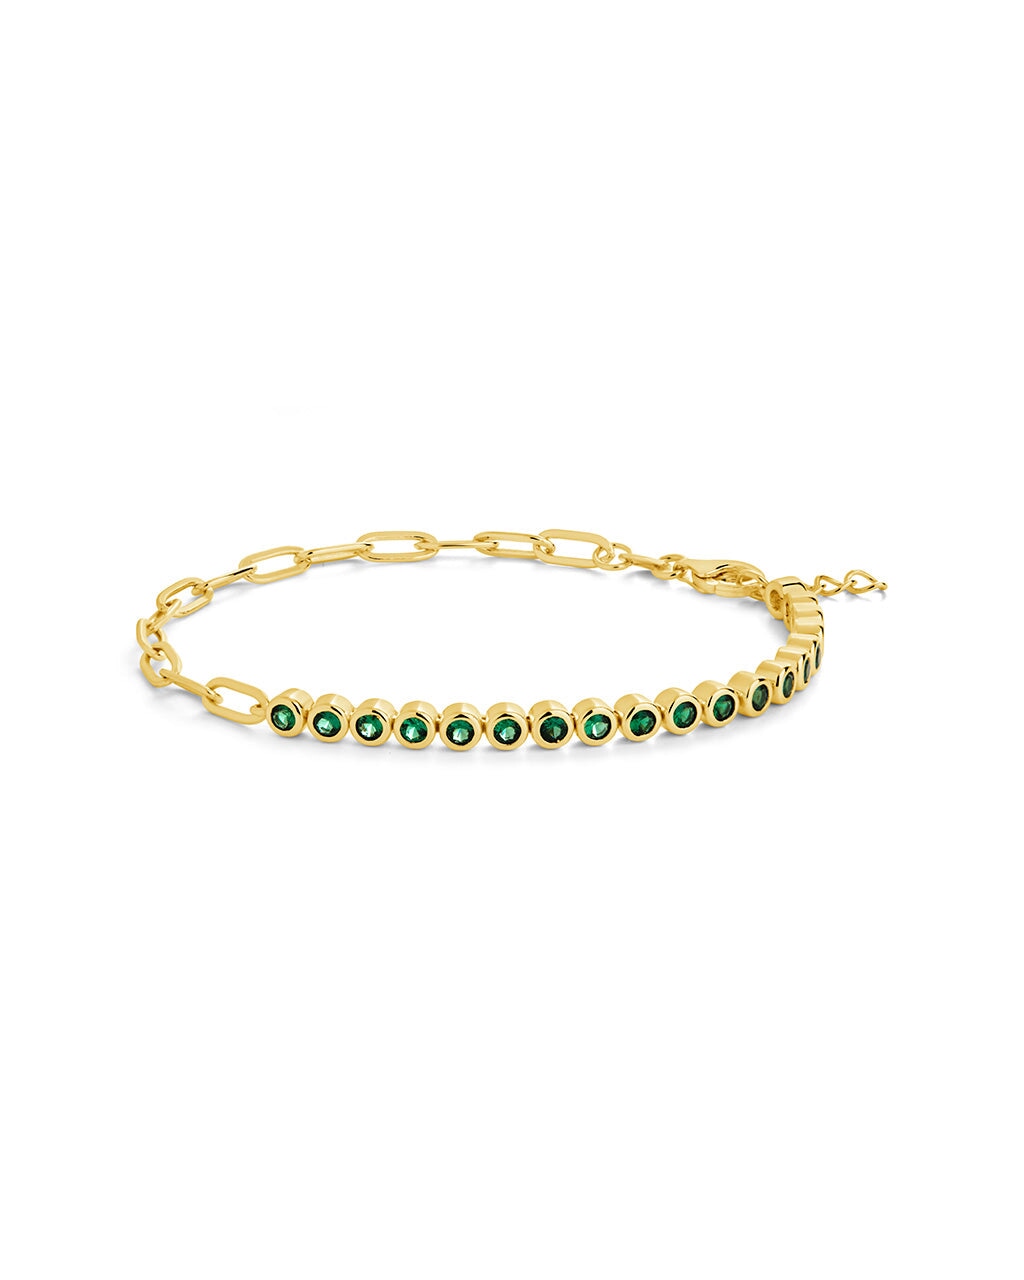 Emerald Chain Bracelet Bracelet Sterling Forever Gold 